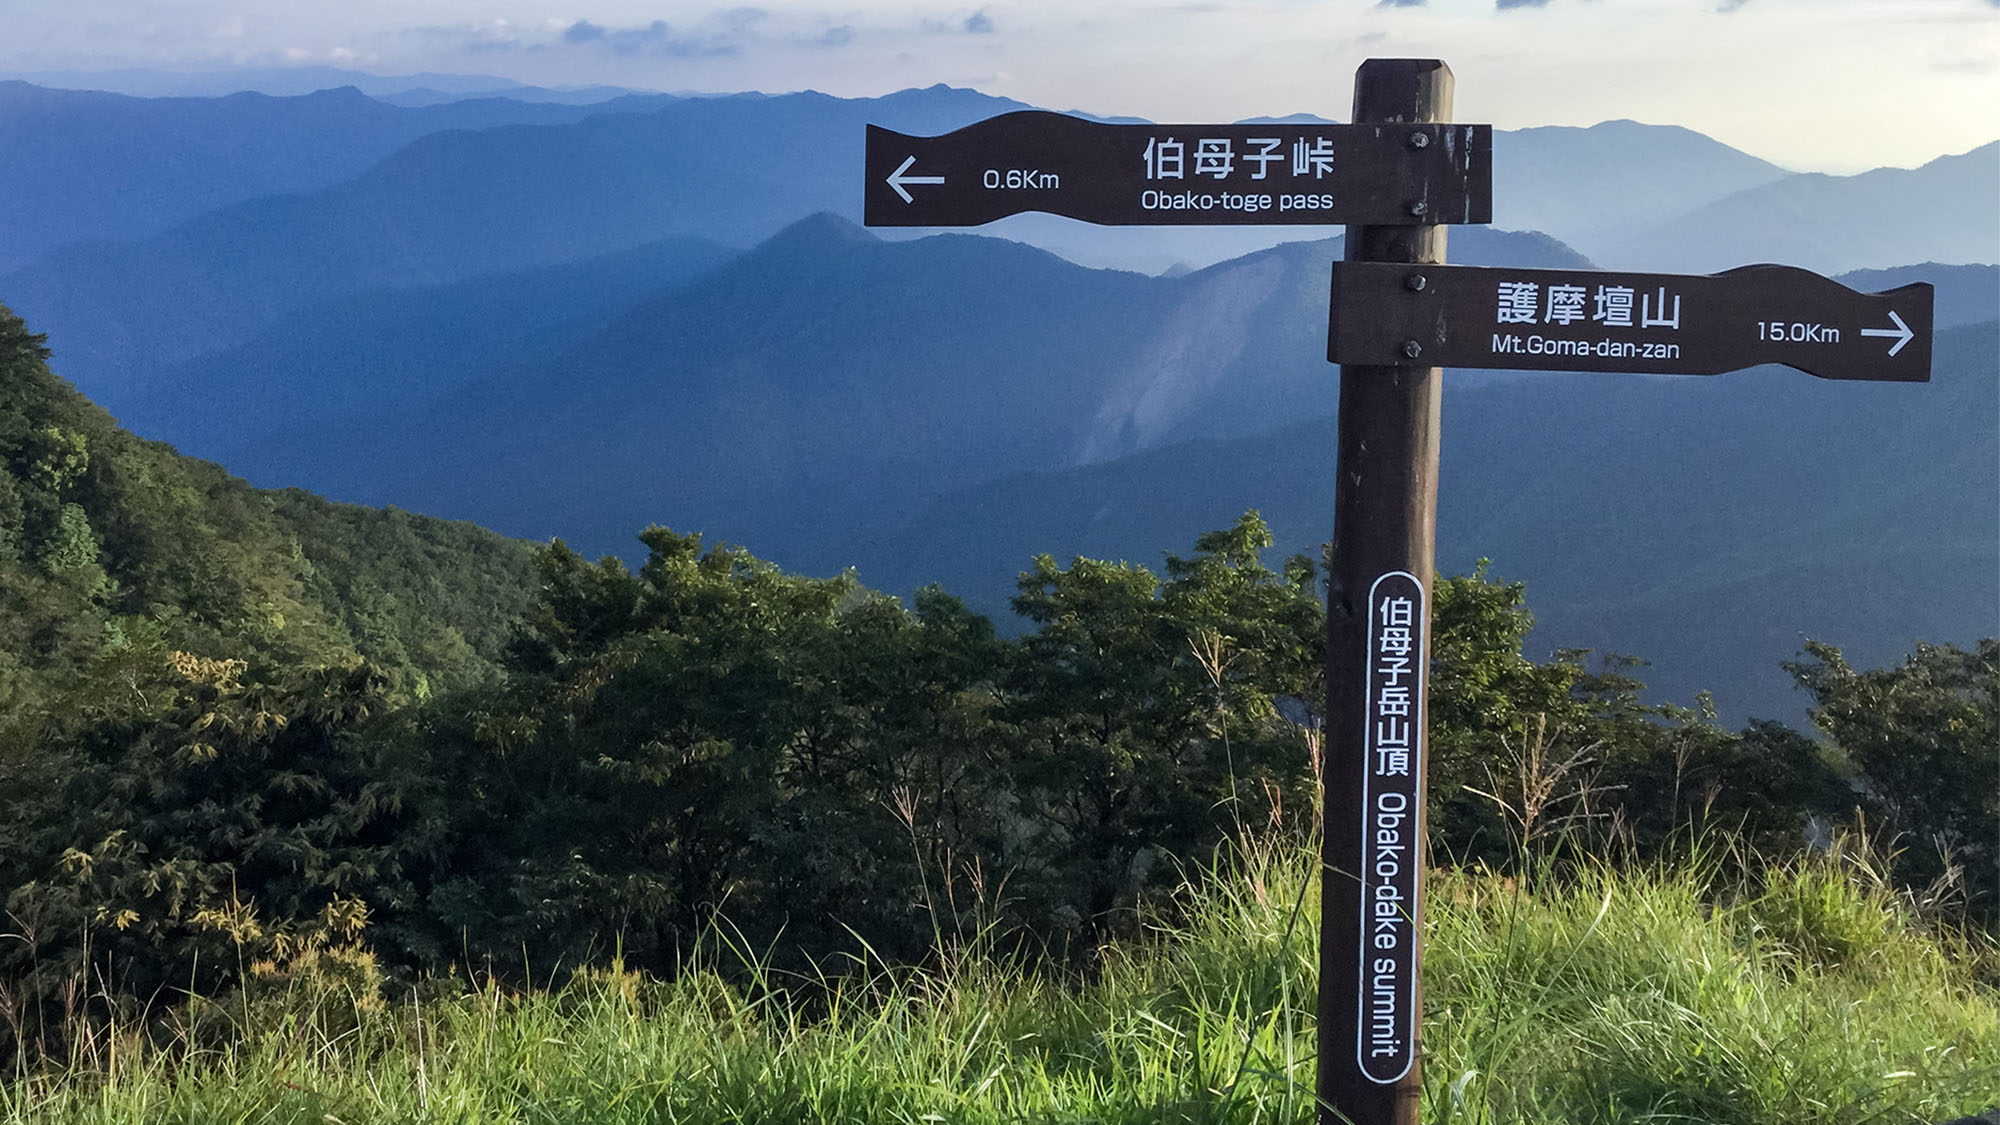 ・【周辺観光】日本200m名山の伯母子岳登頂もいかが♪